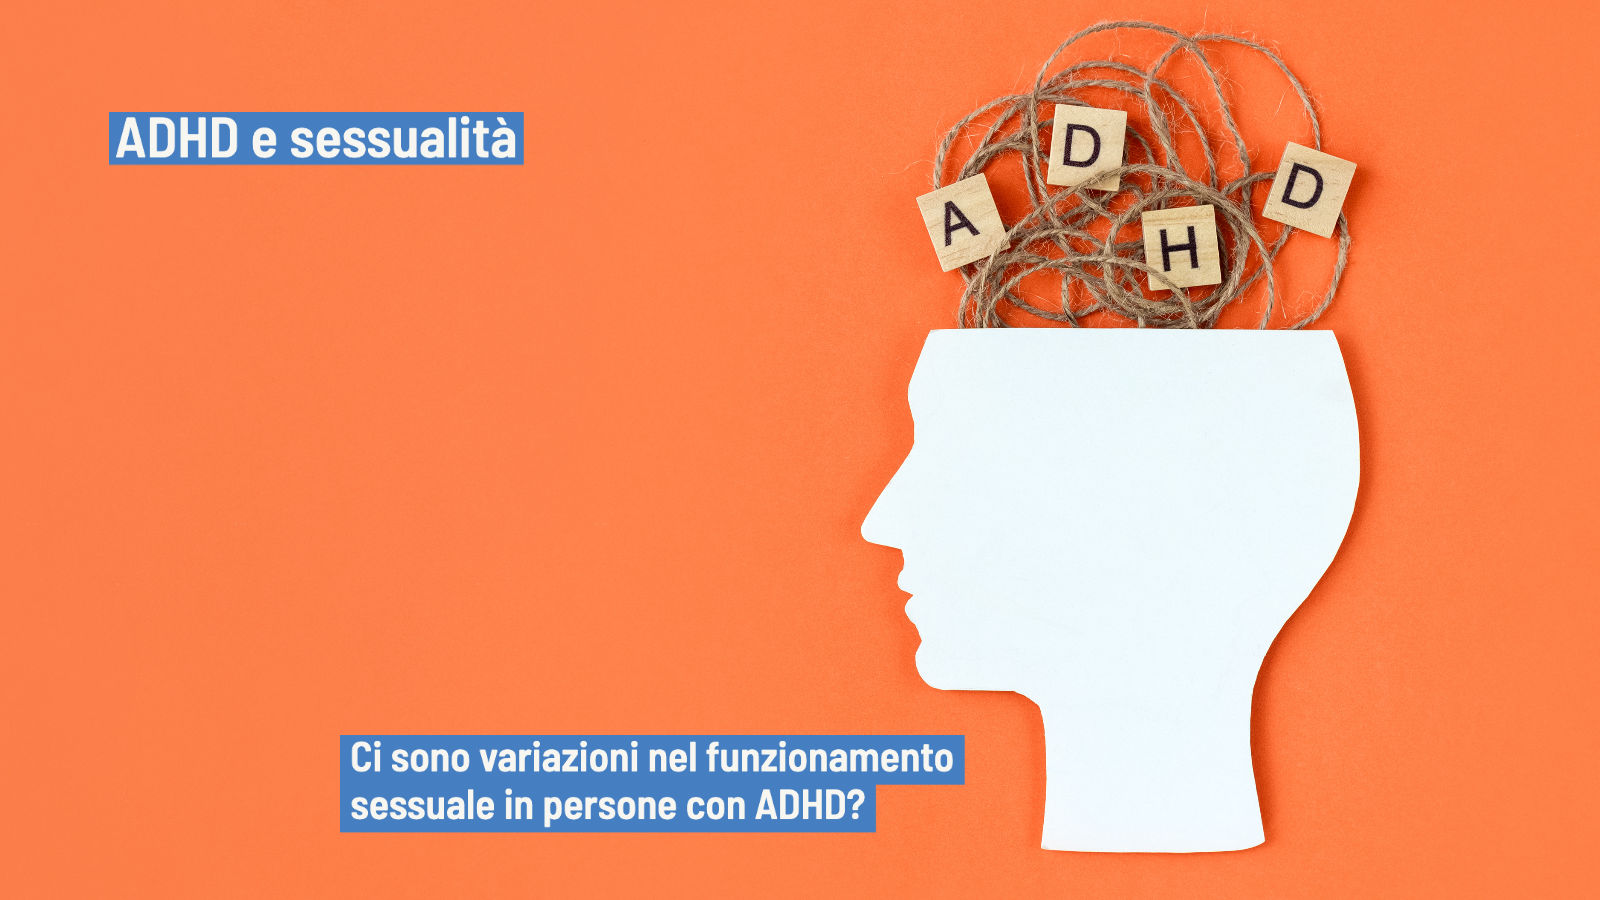 ADHD e sessualità: quali alterazioni nel funzionamento sessuale